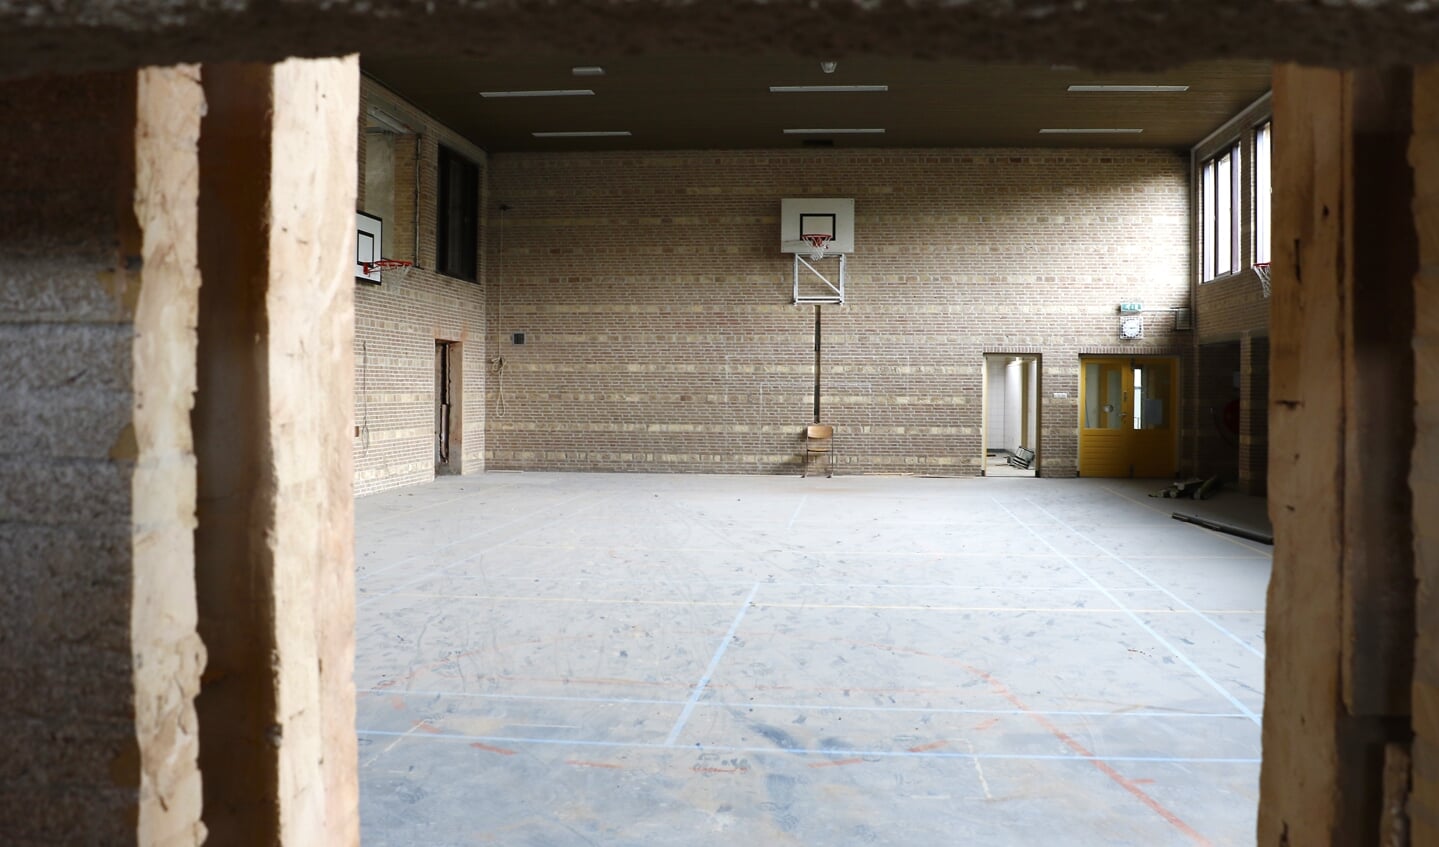 De Internationale School aan de rand van Ruitersbos krijgt steeds meer vorm. 